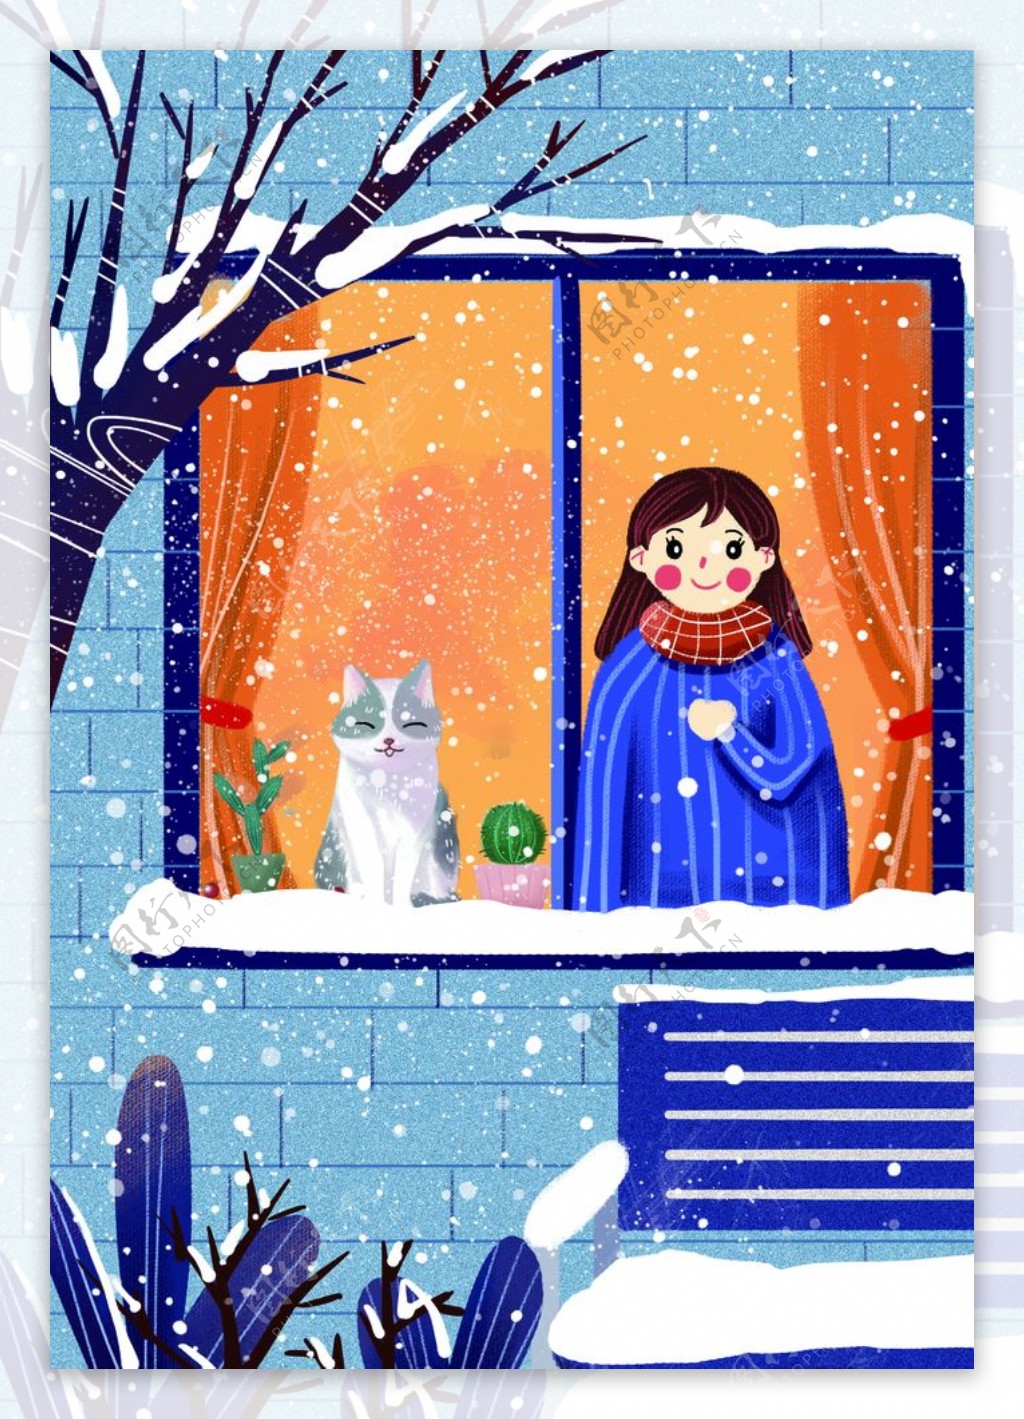 冬季窗台寒冷插画卡通背景素材